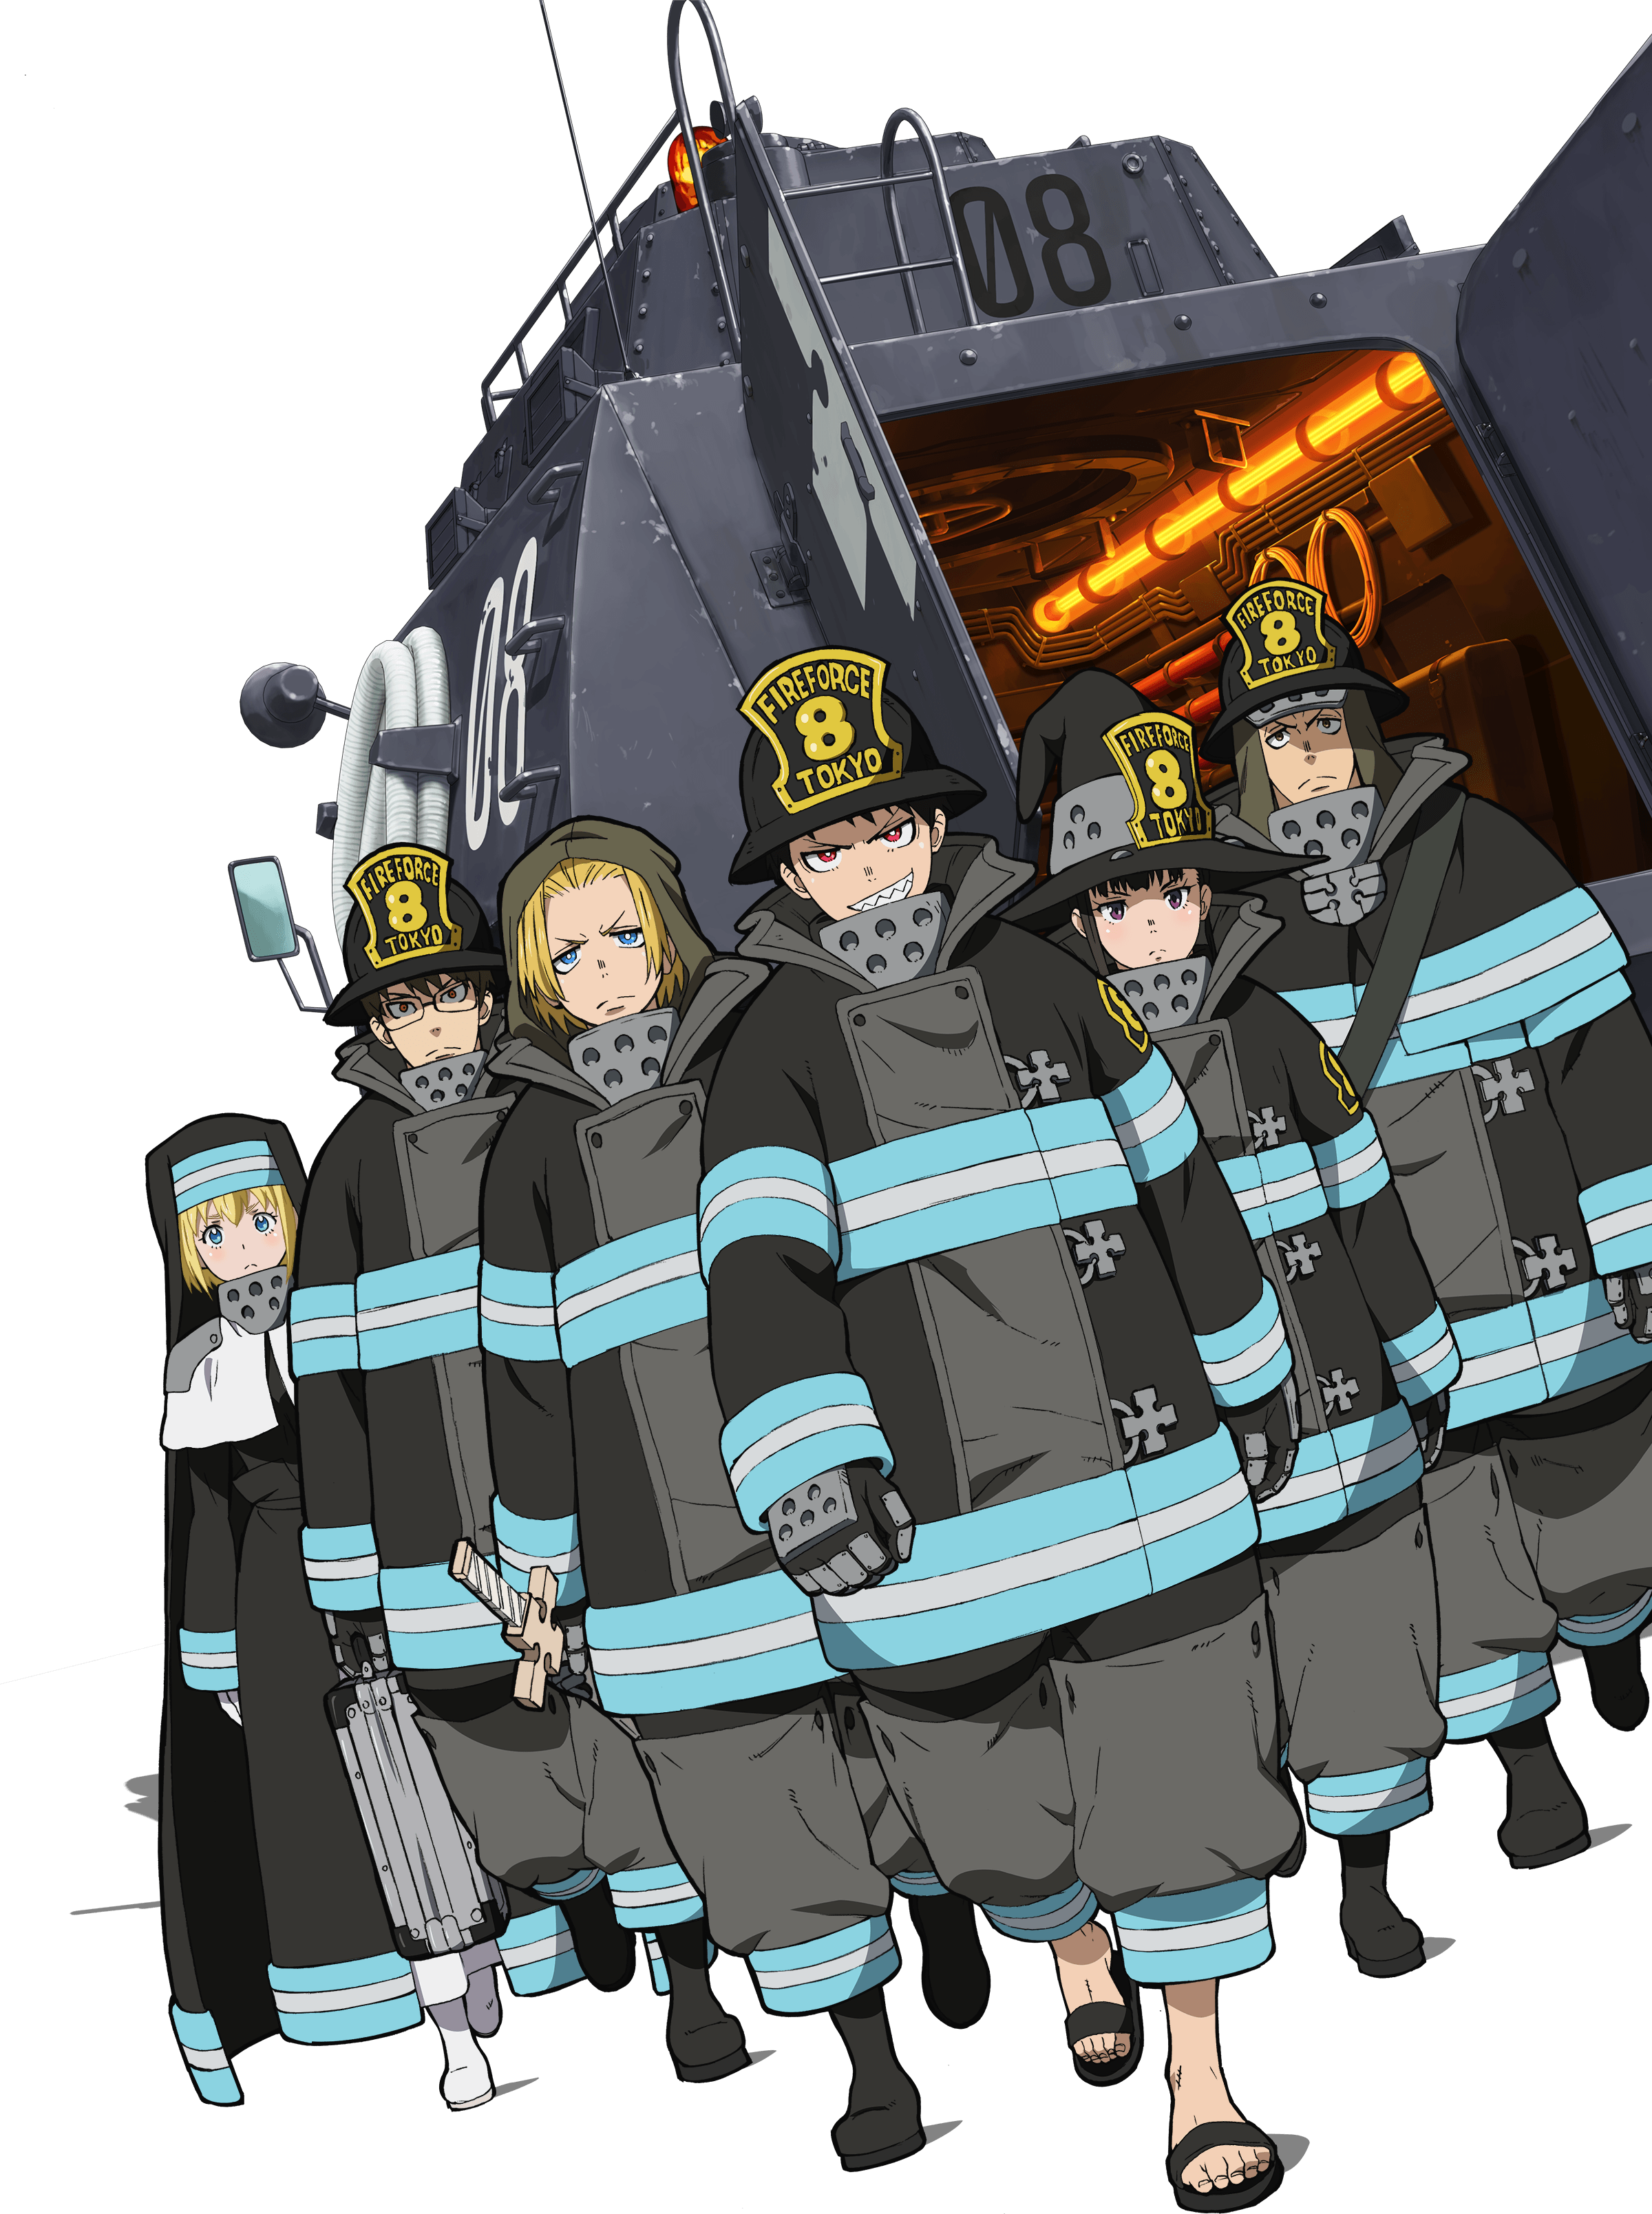 Enen no Shouboutai (Fire Force) Anime Image Board